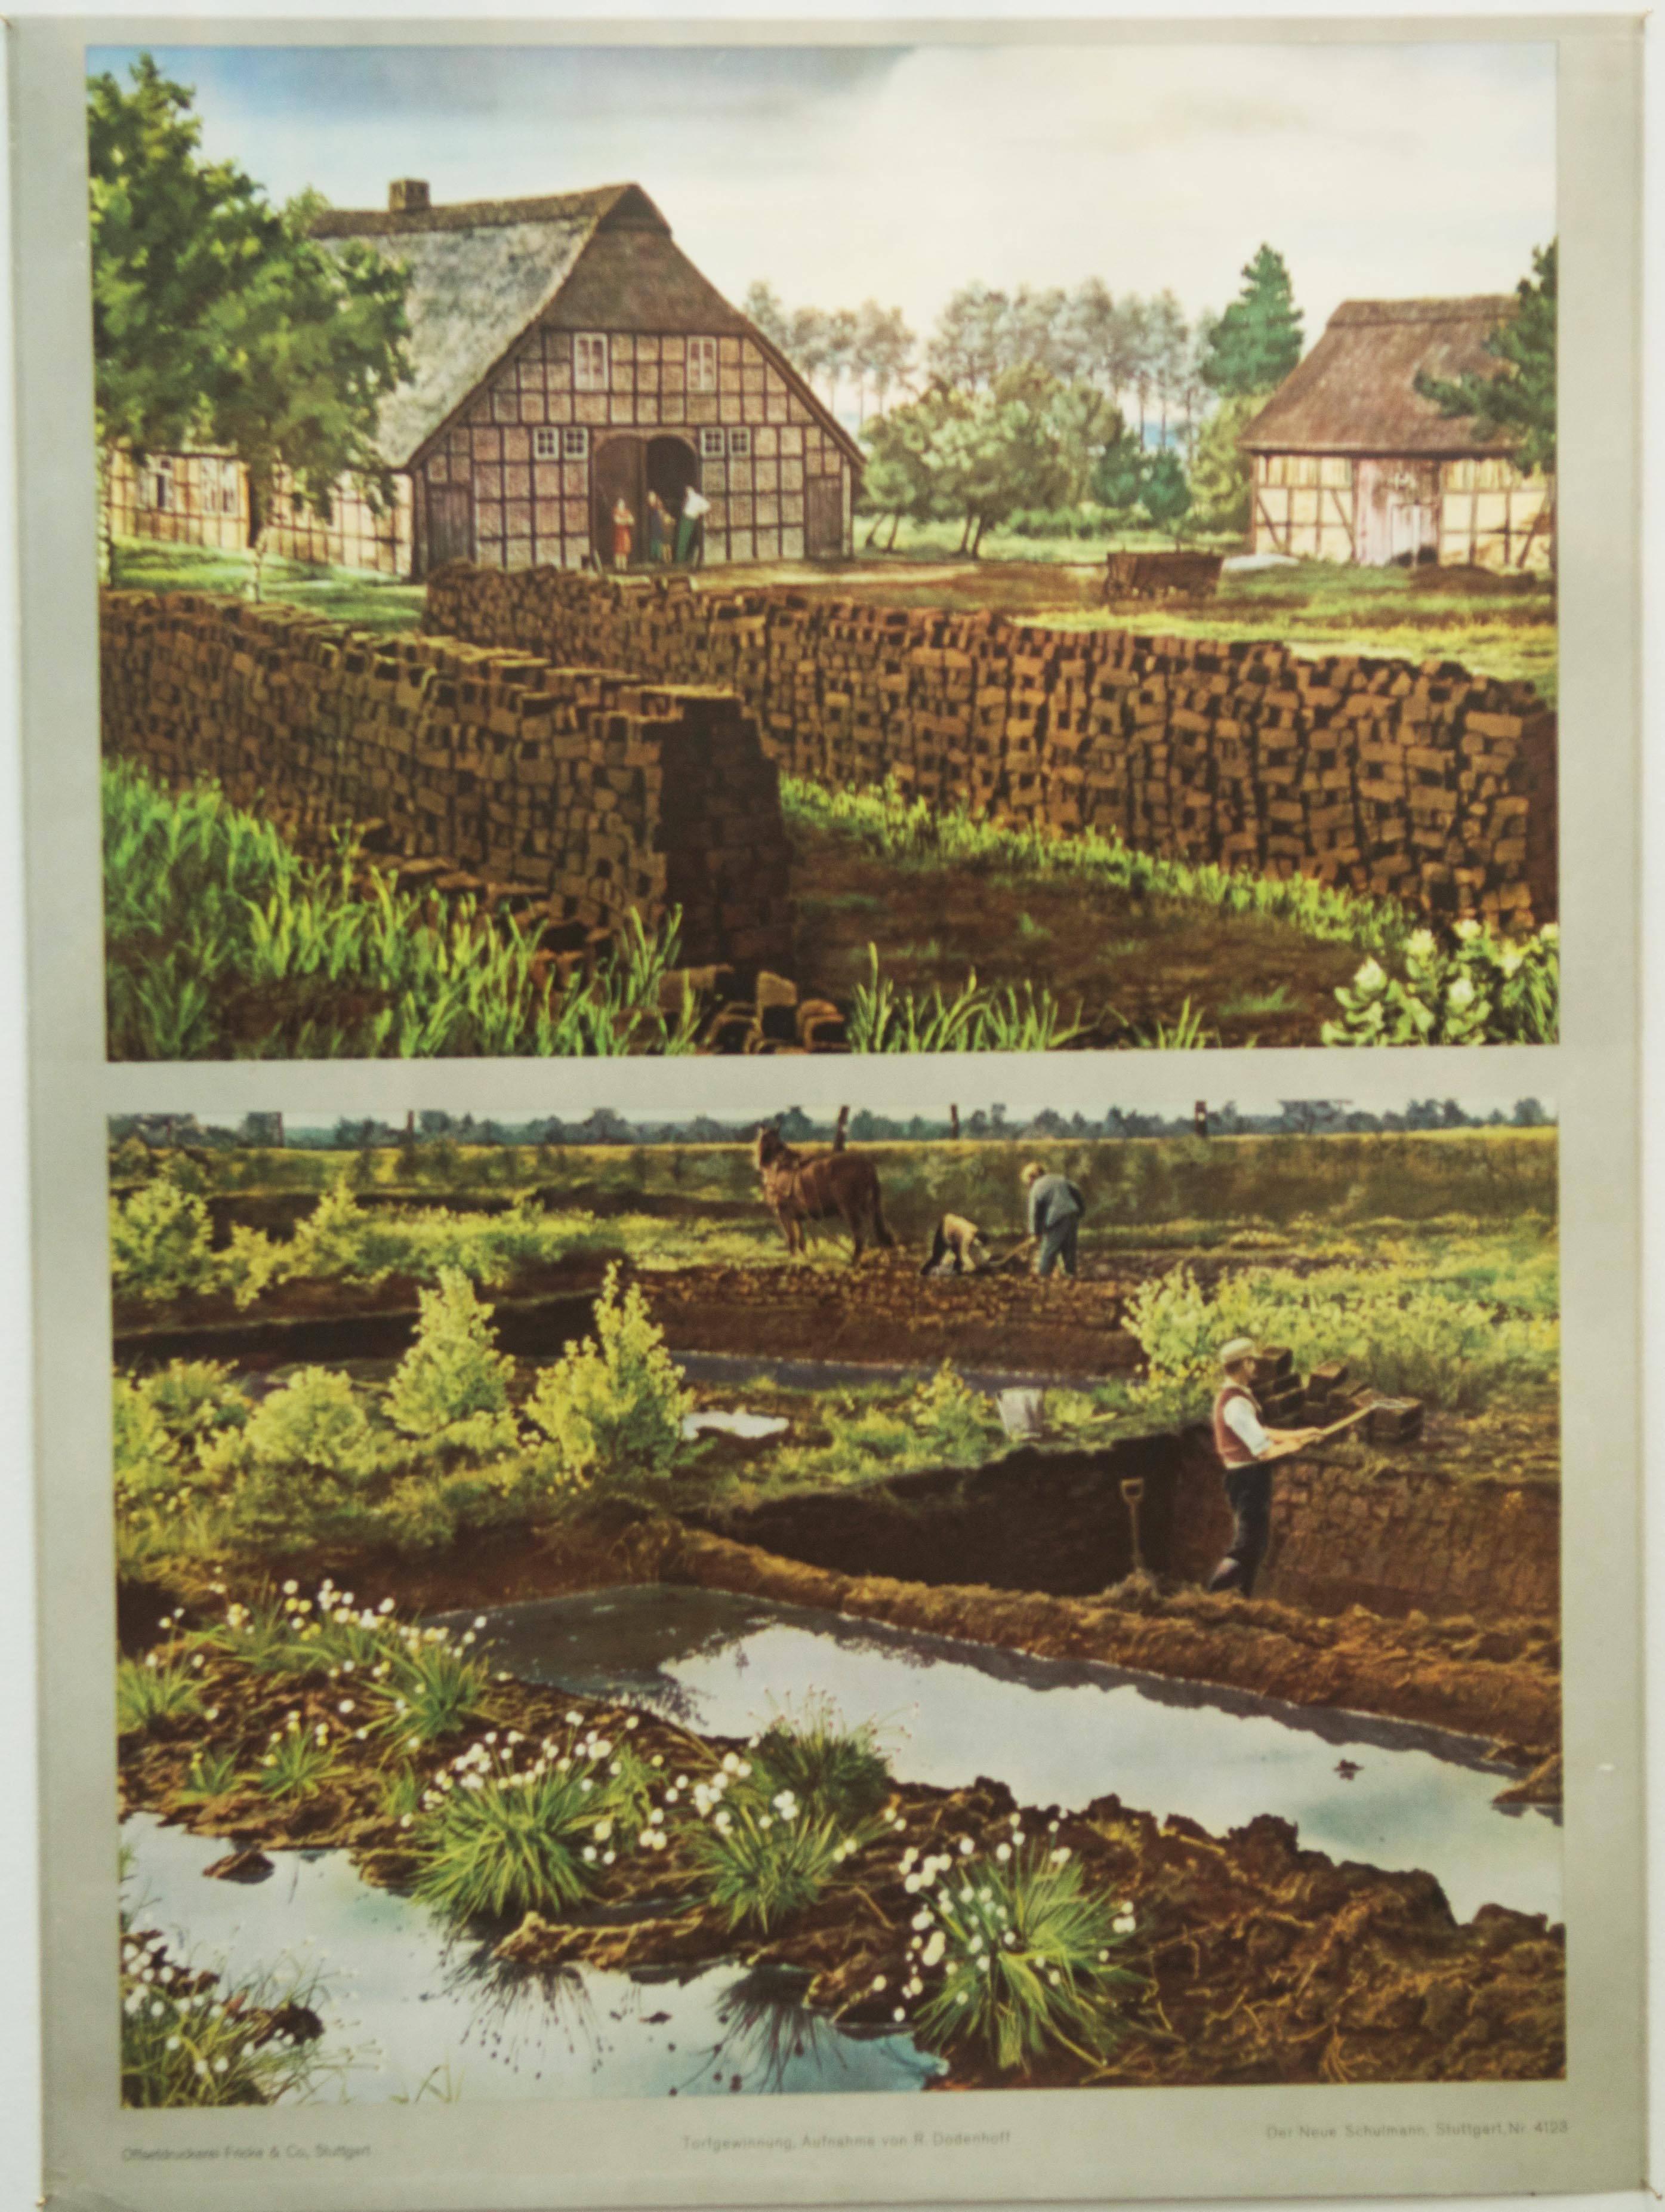 Deutsche Schulkarte im Vintage-Stil, auf der die Torfgewinnung dargestellt ist.
Gedruckt wahrscheinlich in den 1960er Jahren von der 